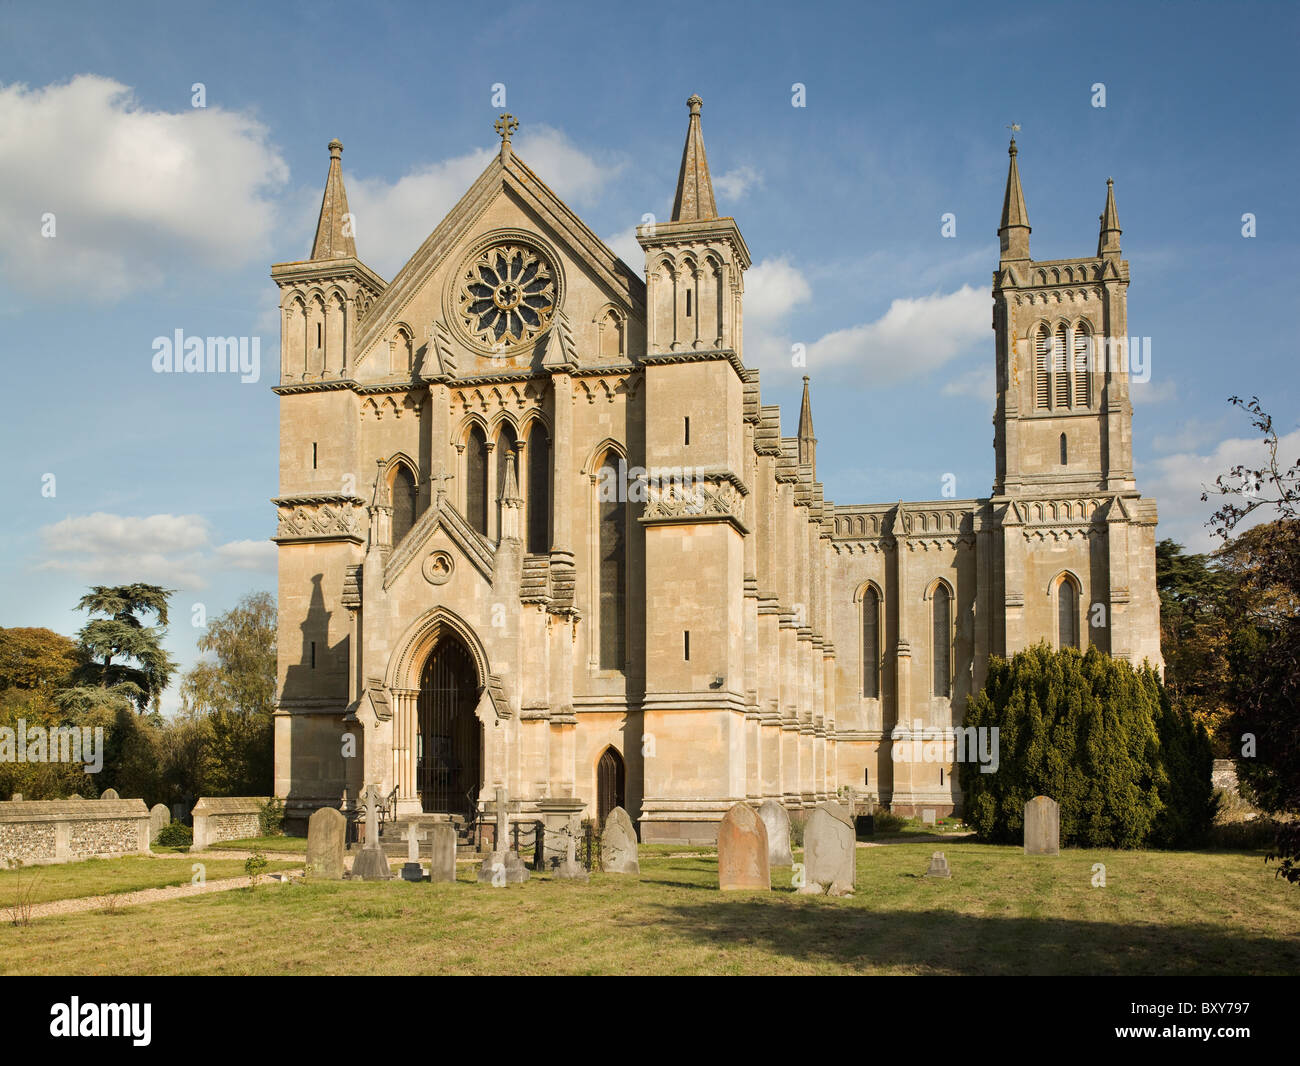 Theale, Berkshire. L'église Holy Trinity 1820-32 par W.W. Panait Istrati, avec tour par John Buckler. Banque D'Images